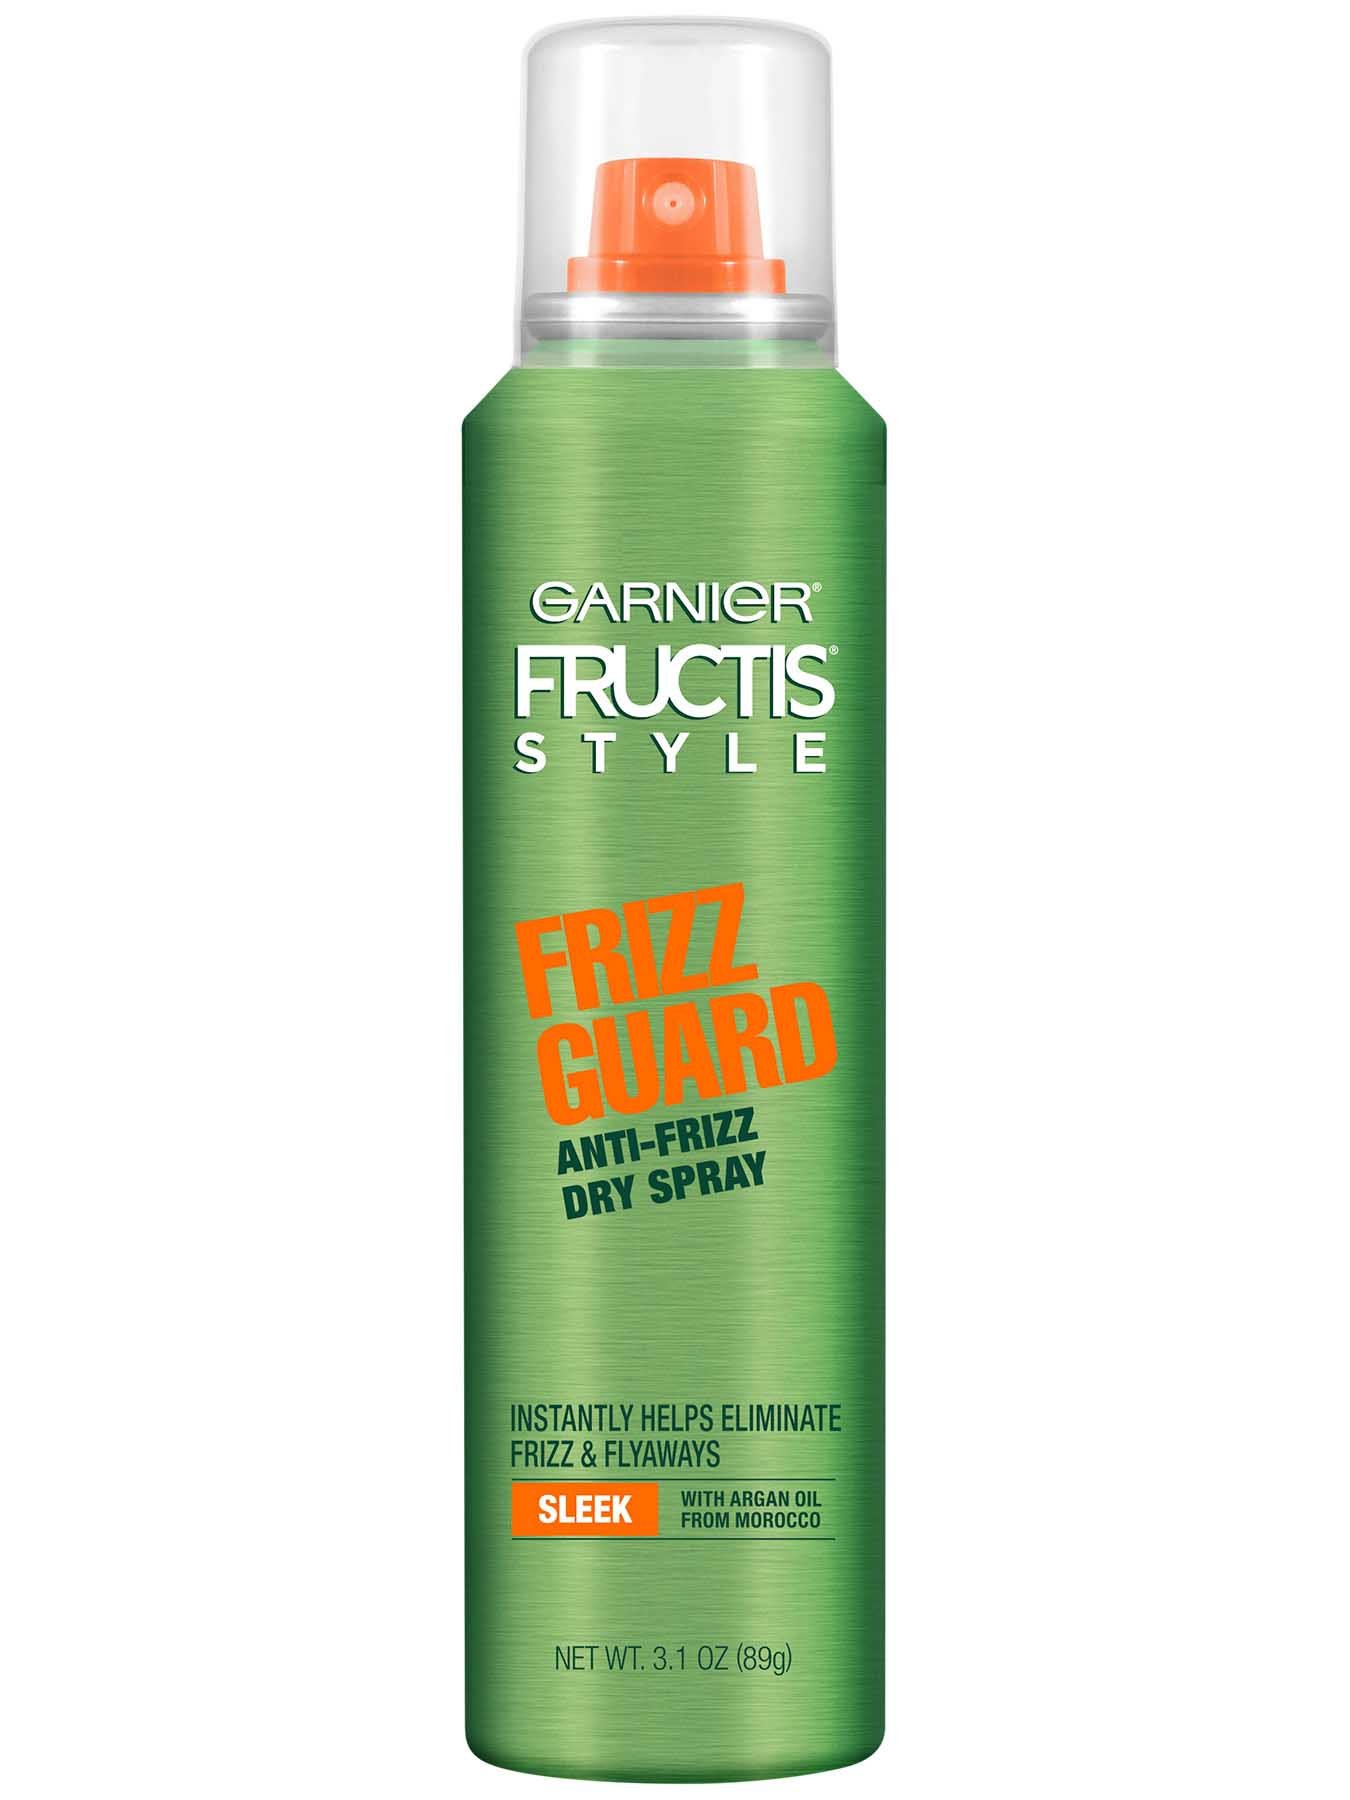 Front view of Frizz Guard Anti-Frizz Dry Spray.